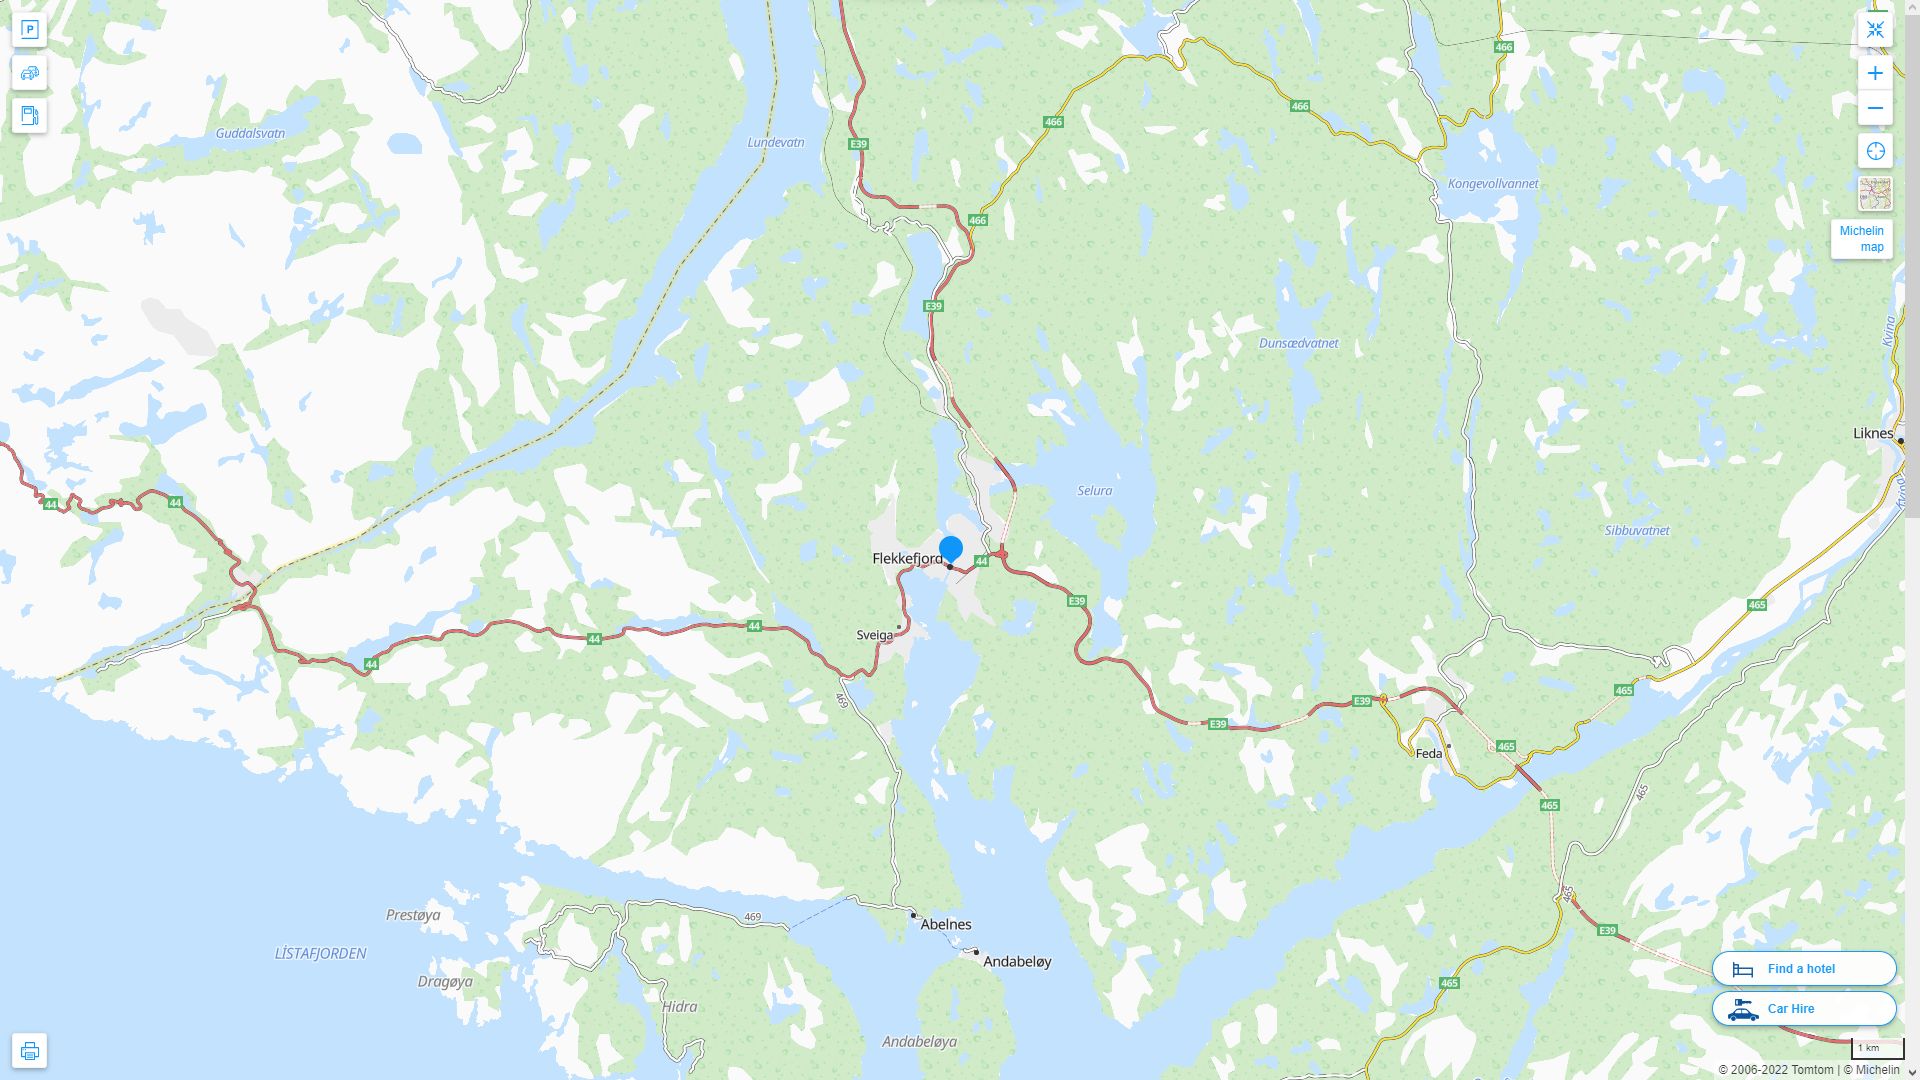 Flekkefjord Norvege Autoroute et carte routiere